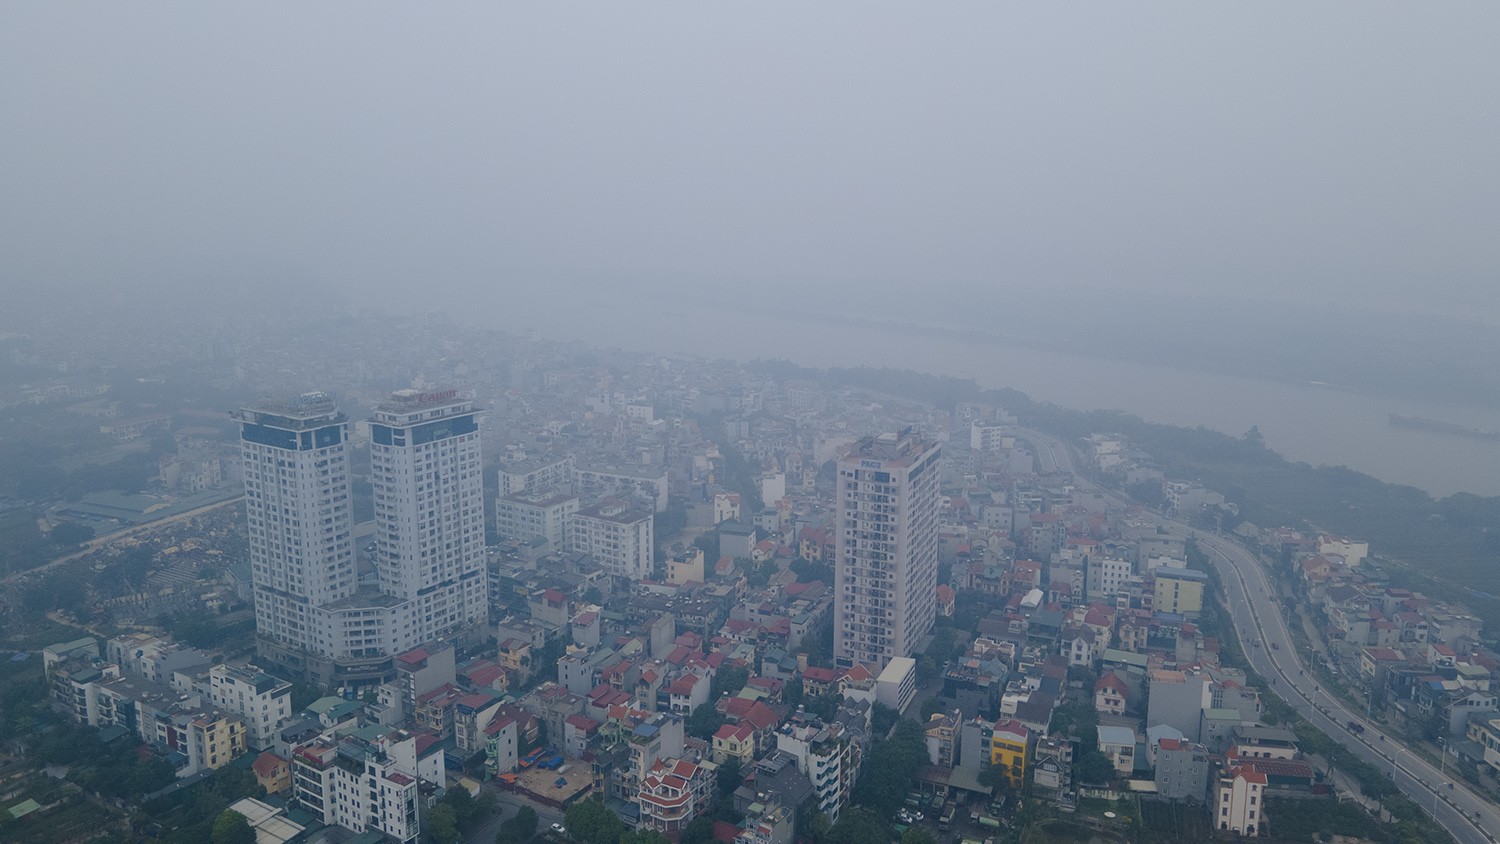 Trung tâm Hà Nội chìm trong sương mù dày đặc, chất lượng không khí nhiều nơi ở “mức đỏ” - 3